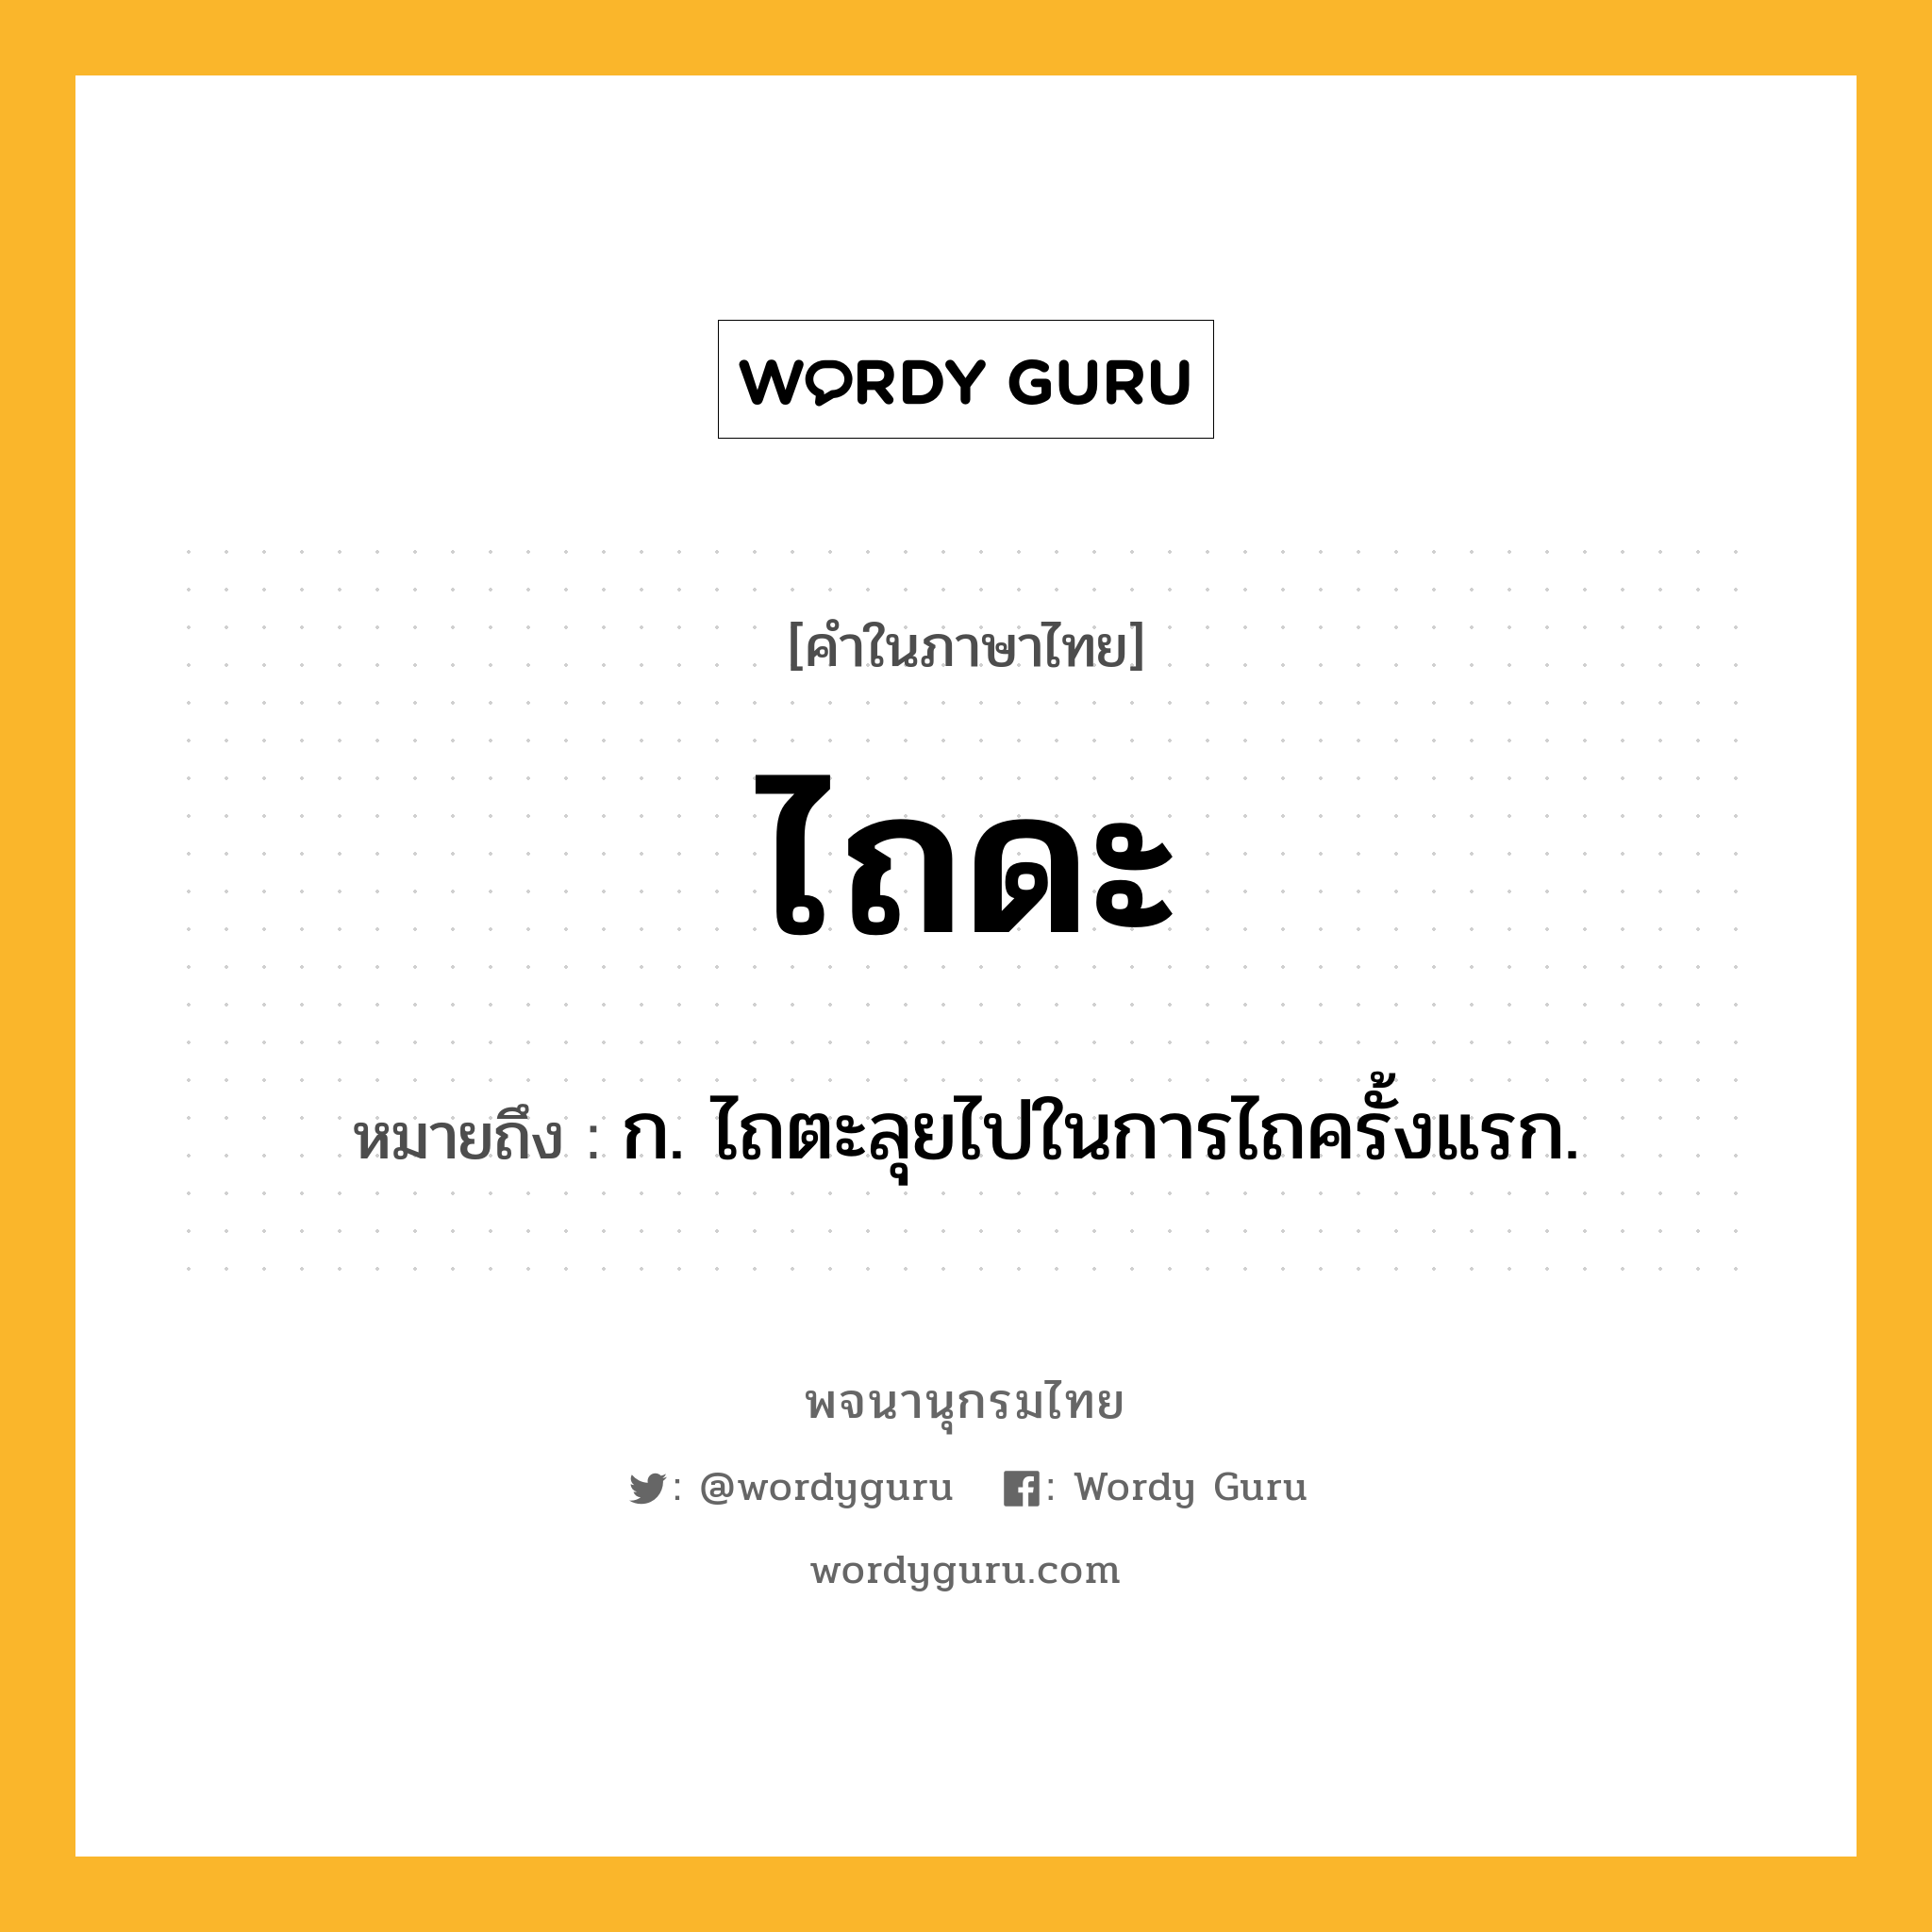 ไถดะ หมายถึงอะไร?, คำในภาษาไทย ไถดะ หมายถึง ก. ไถตะลุยไปในการไถครั้งแรก.